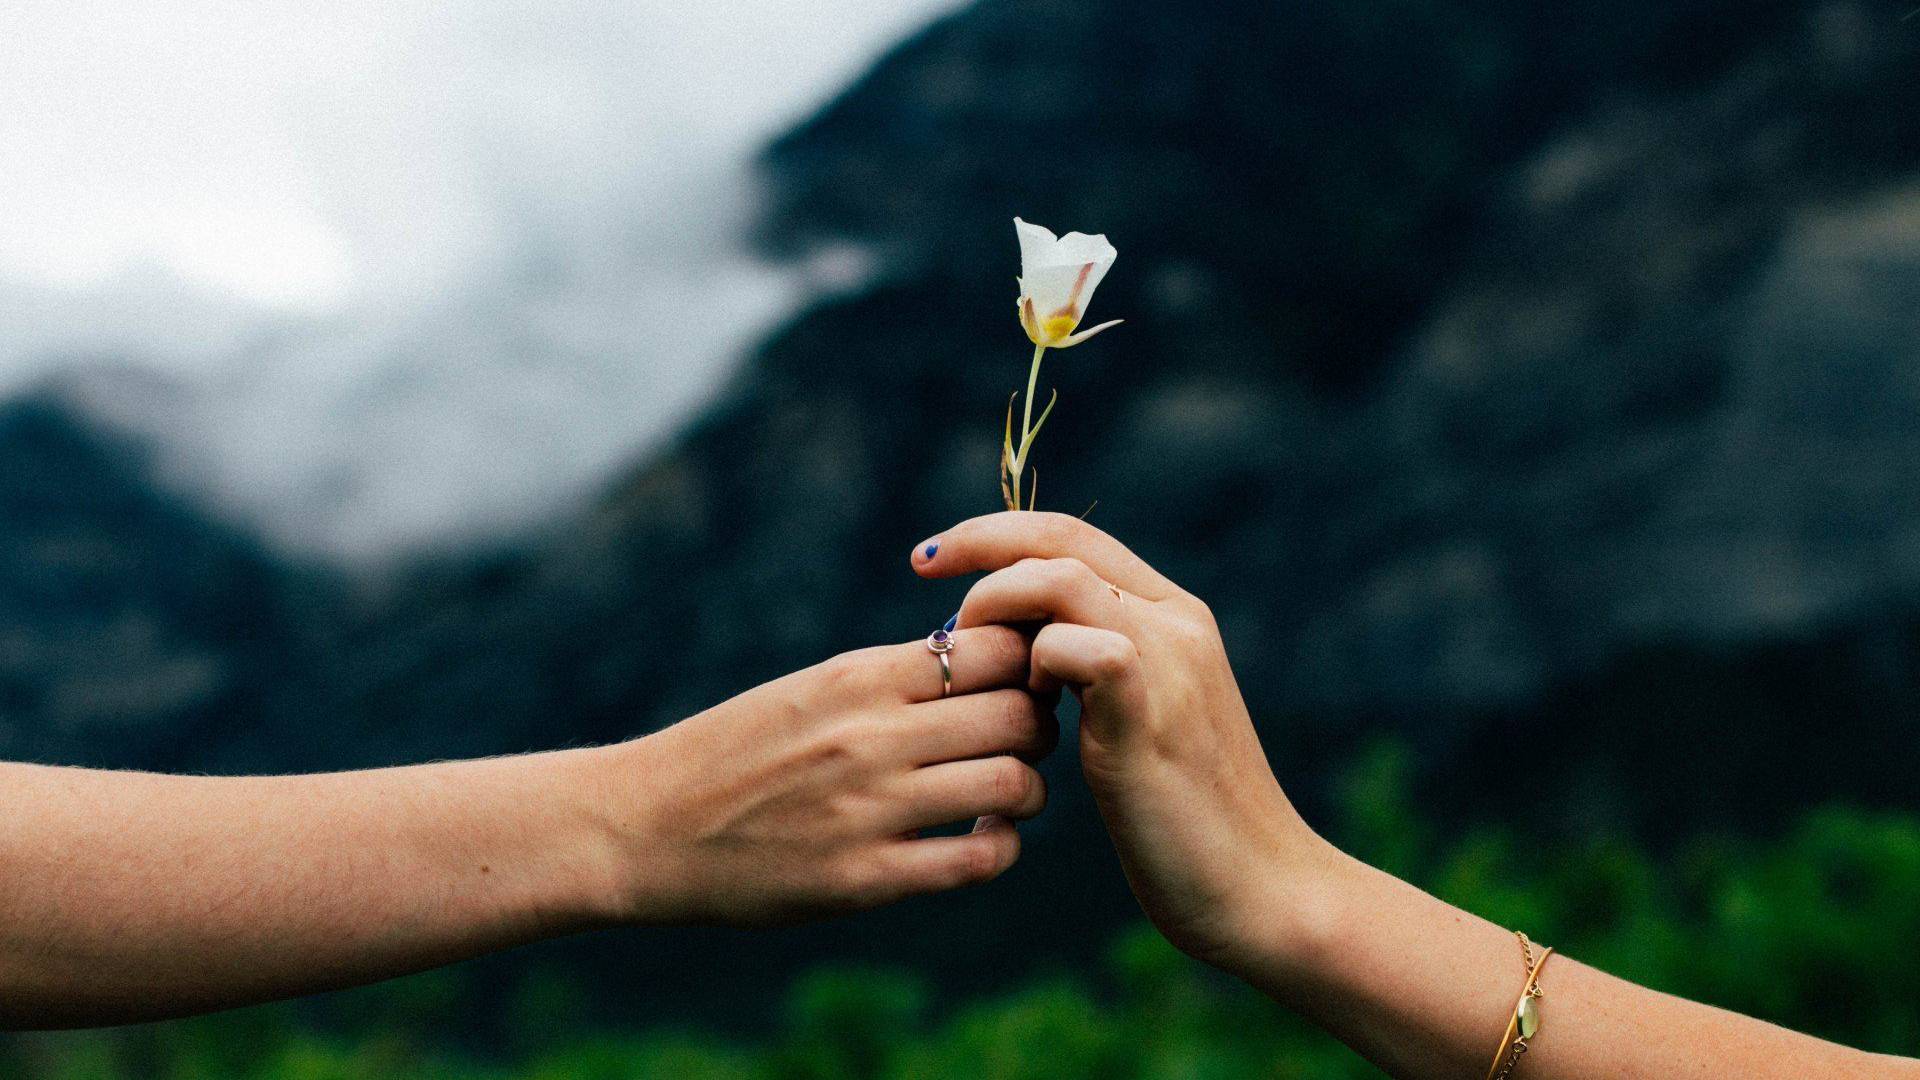 Zwei Hände halten eine Blume